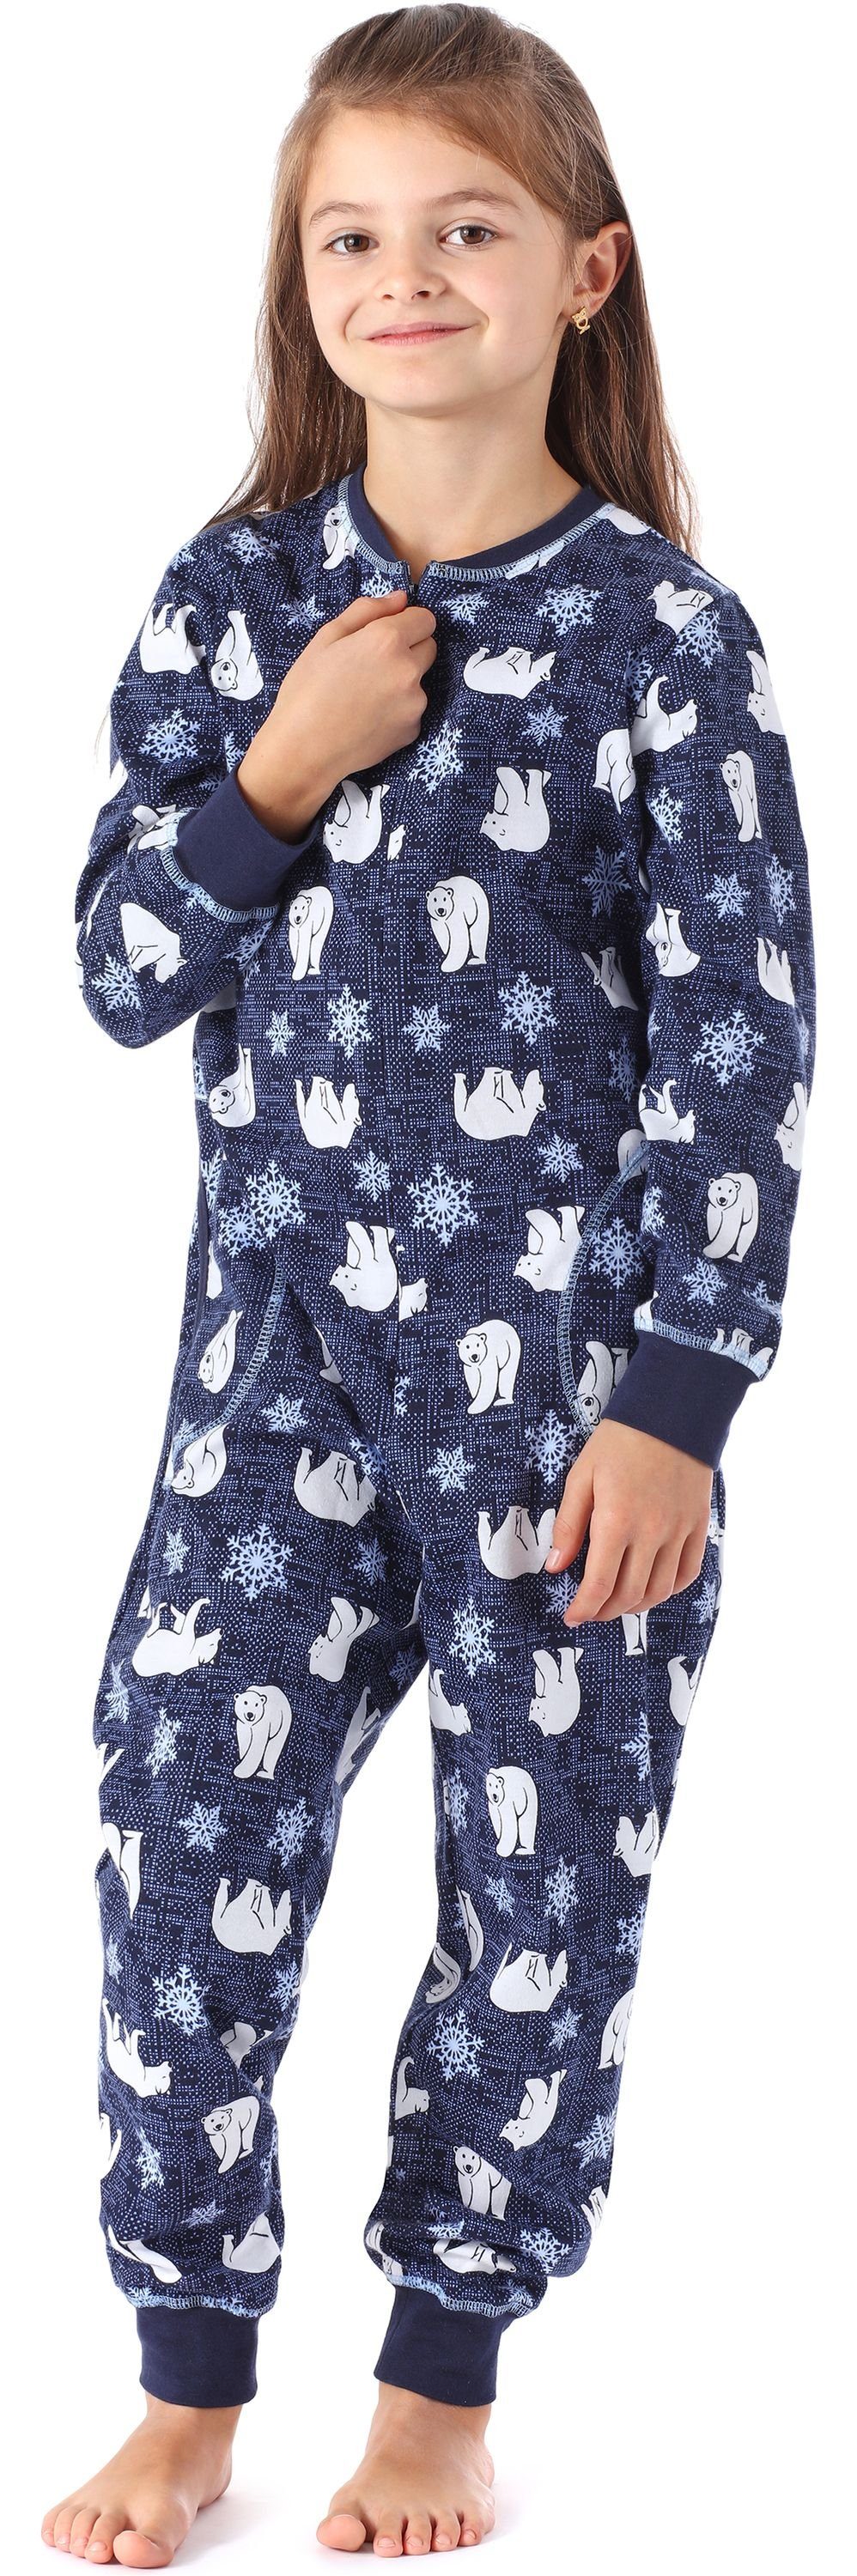 MS10-186 Bär Jumpsuit Mädchen Style Schlafanzug Merry Schlafanzug Marine